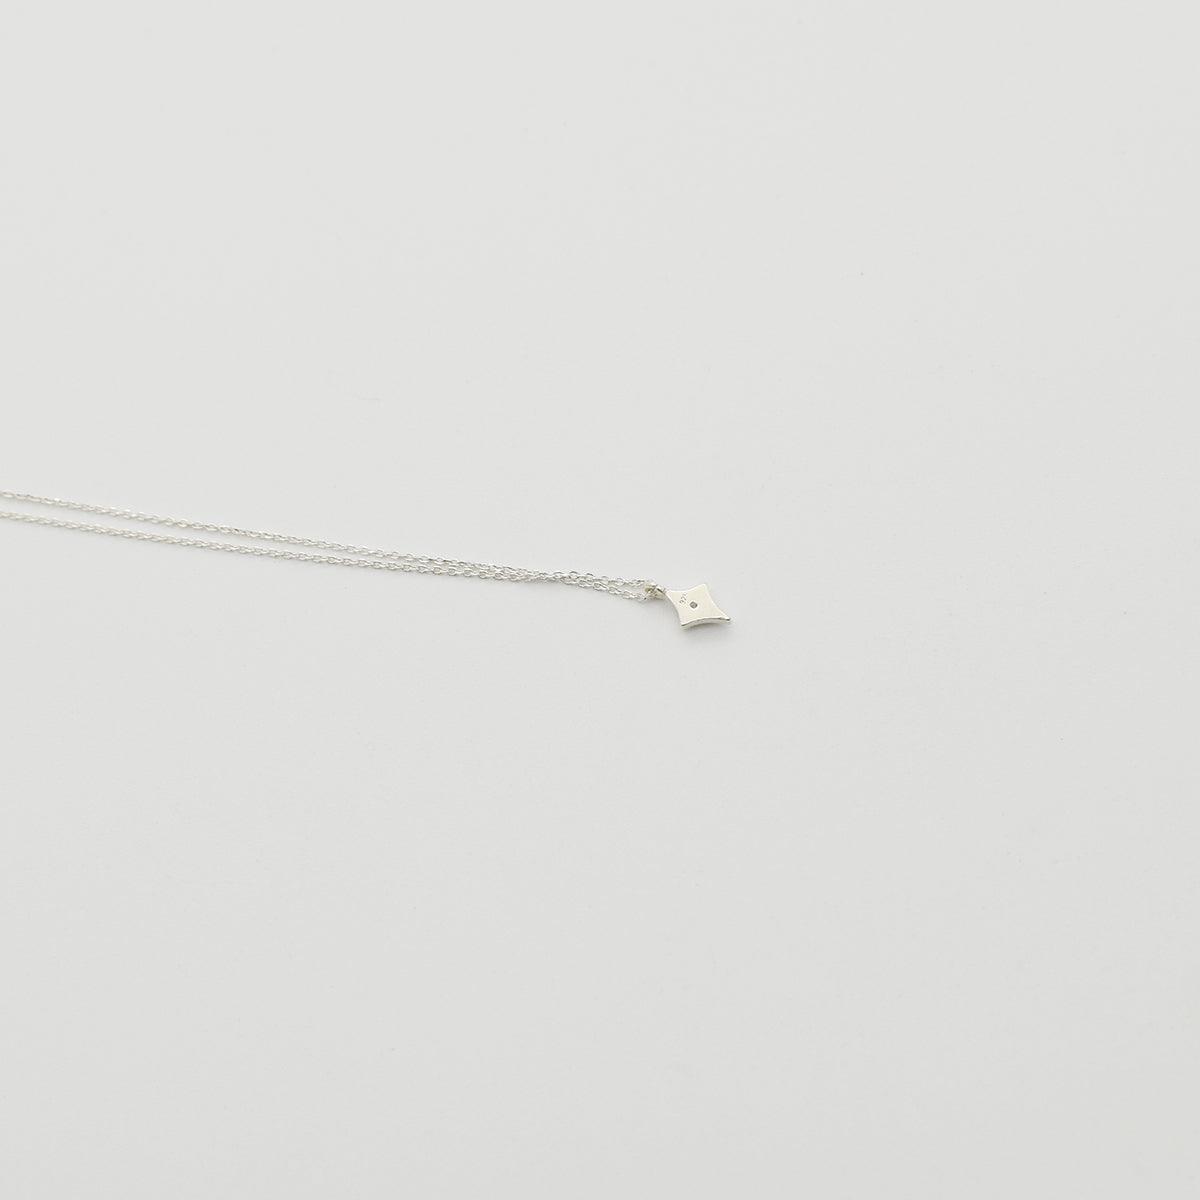 [925 Silver]スピリットキュービックネックレス necklace 10000won 